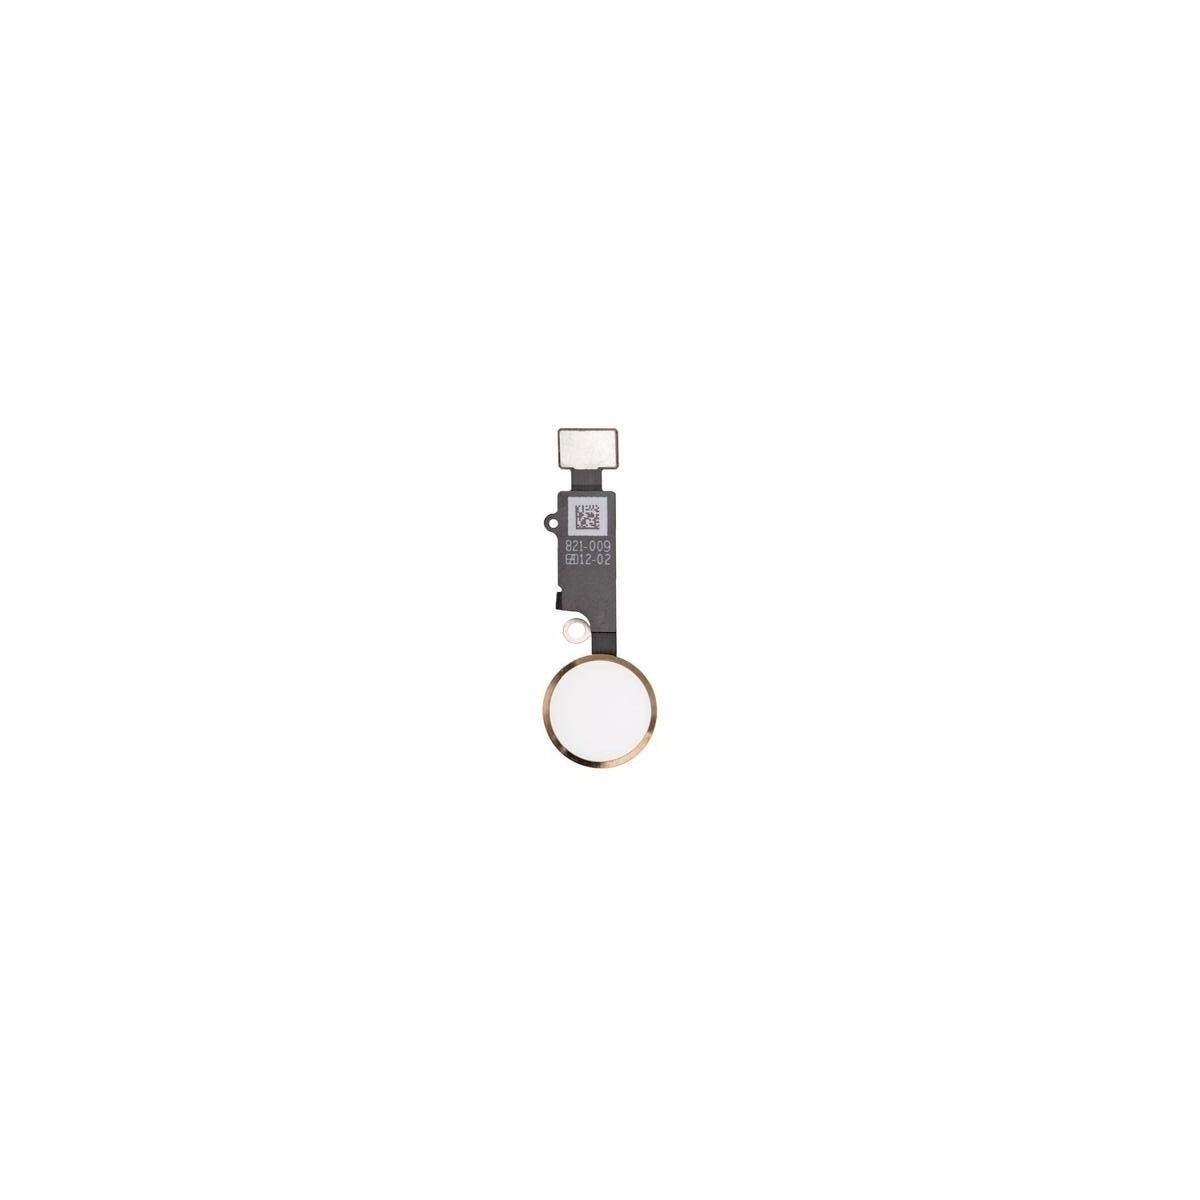 Bouton Home Fonctionnel avec Nappe Flex Compatible avec iPhone 7 Blanc-Or Home Button de Rechange